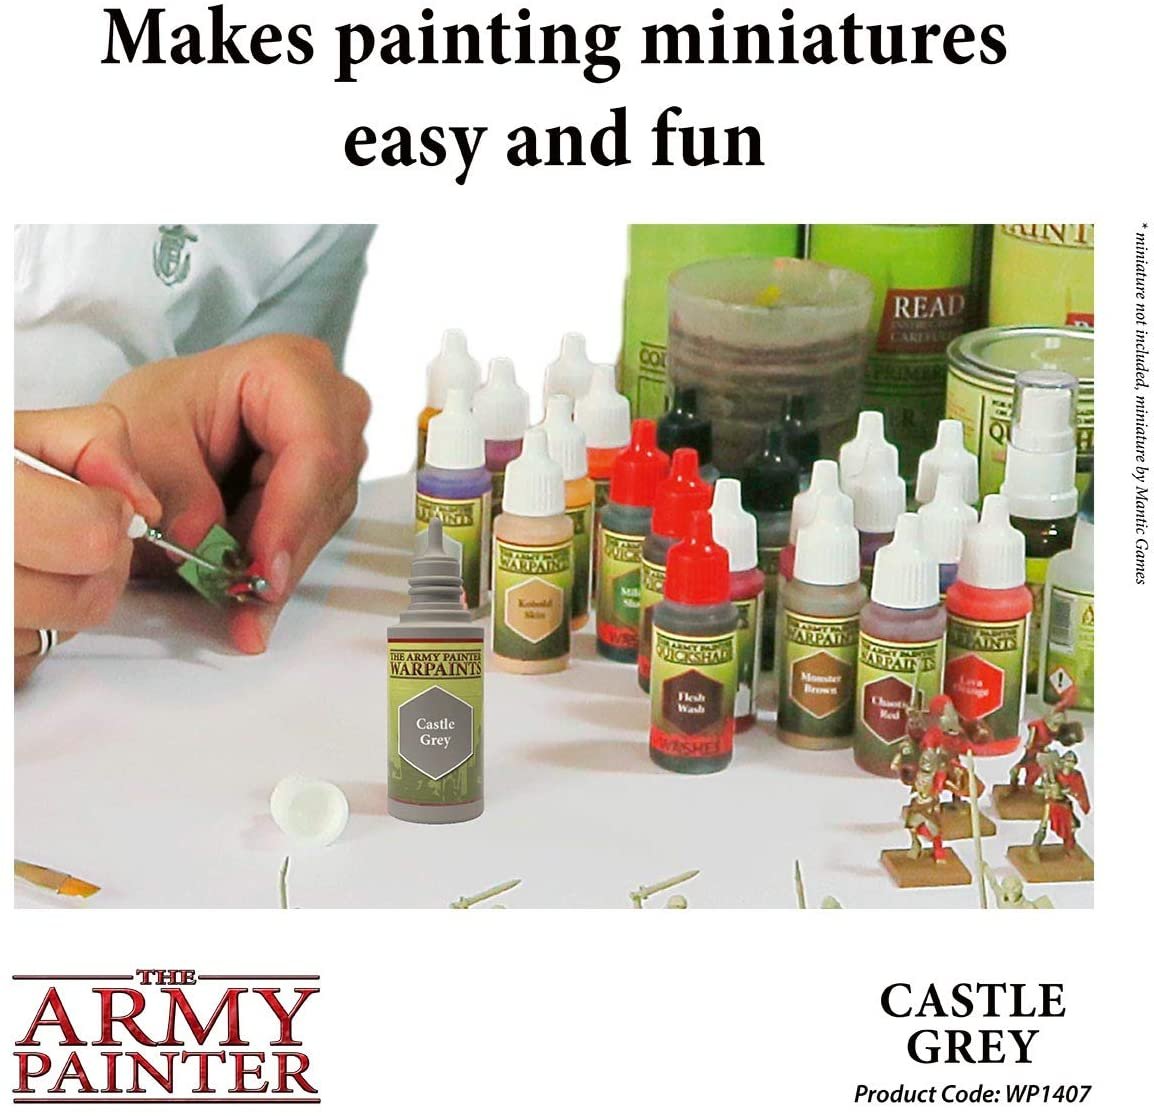 The Army Painter - Warpaints: Castle Grey (18ml/0.6oz)